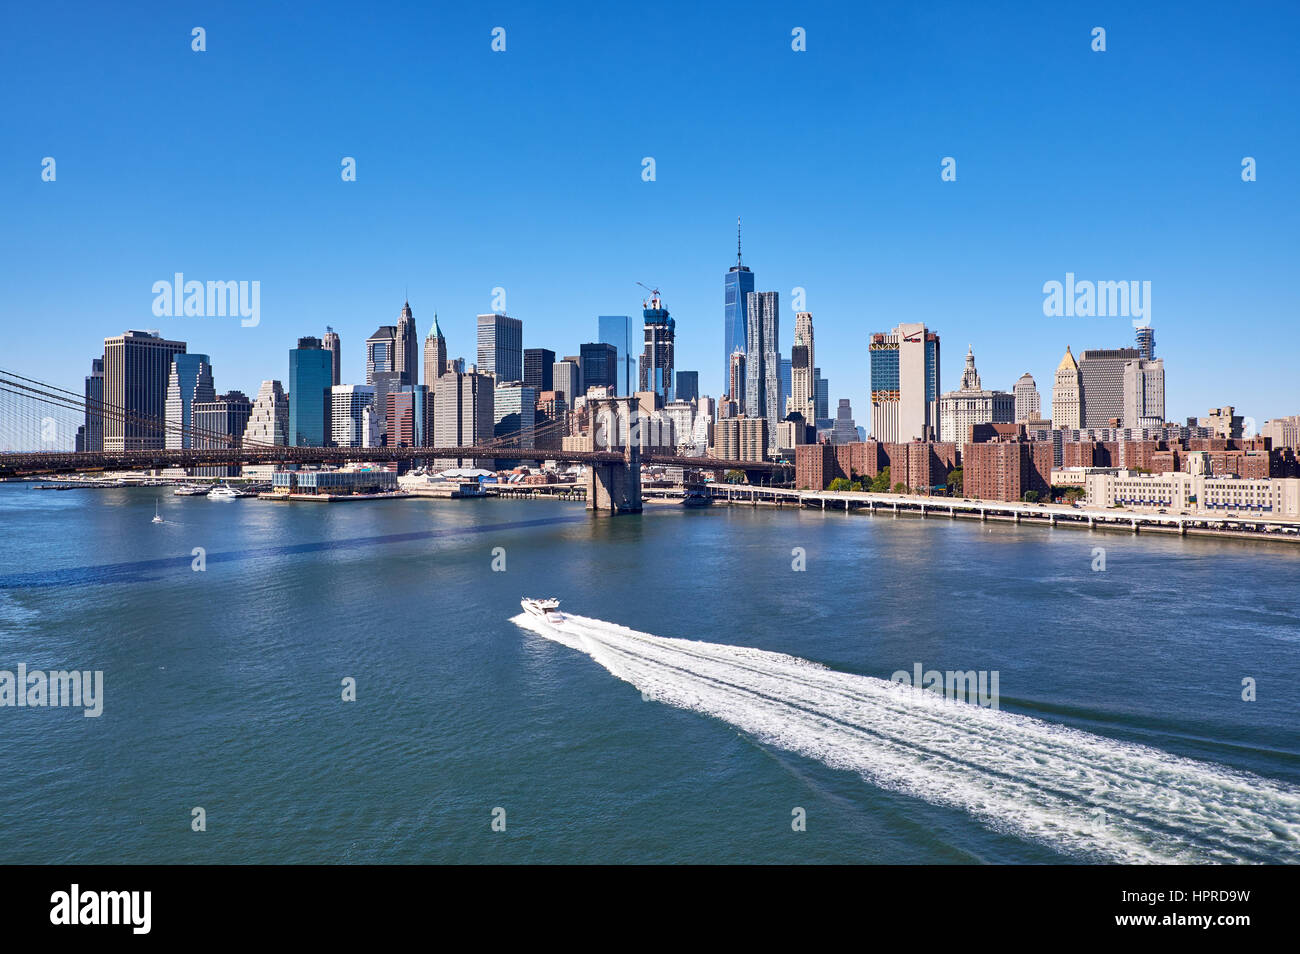 NEW YORK - 25 SEPTEMBRE : vue sur la rivière de l'est avec un bateau à moteur faisant un sentier blanc service en face de la skyline du quartier financier de Manhattan Banque D'Images